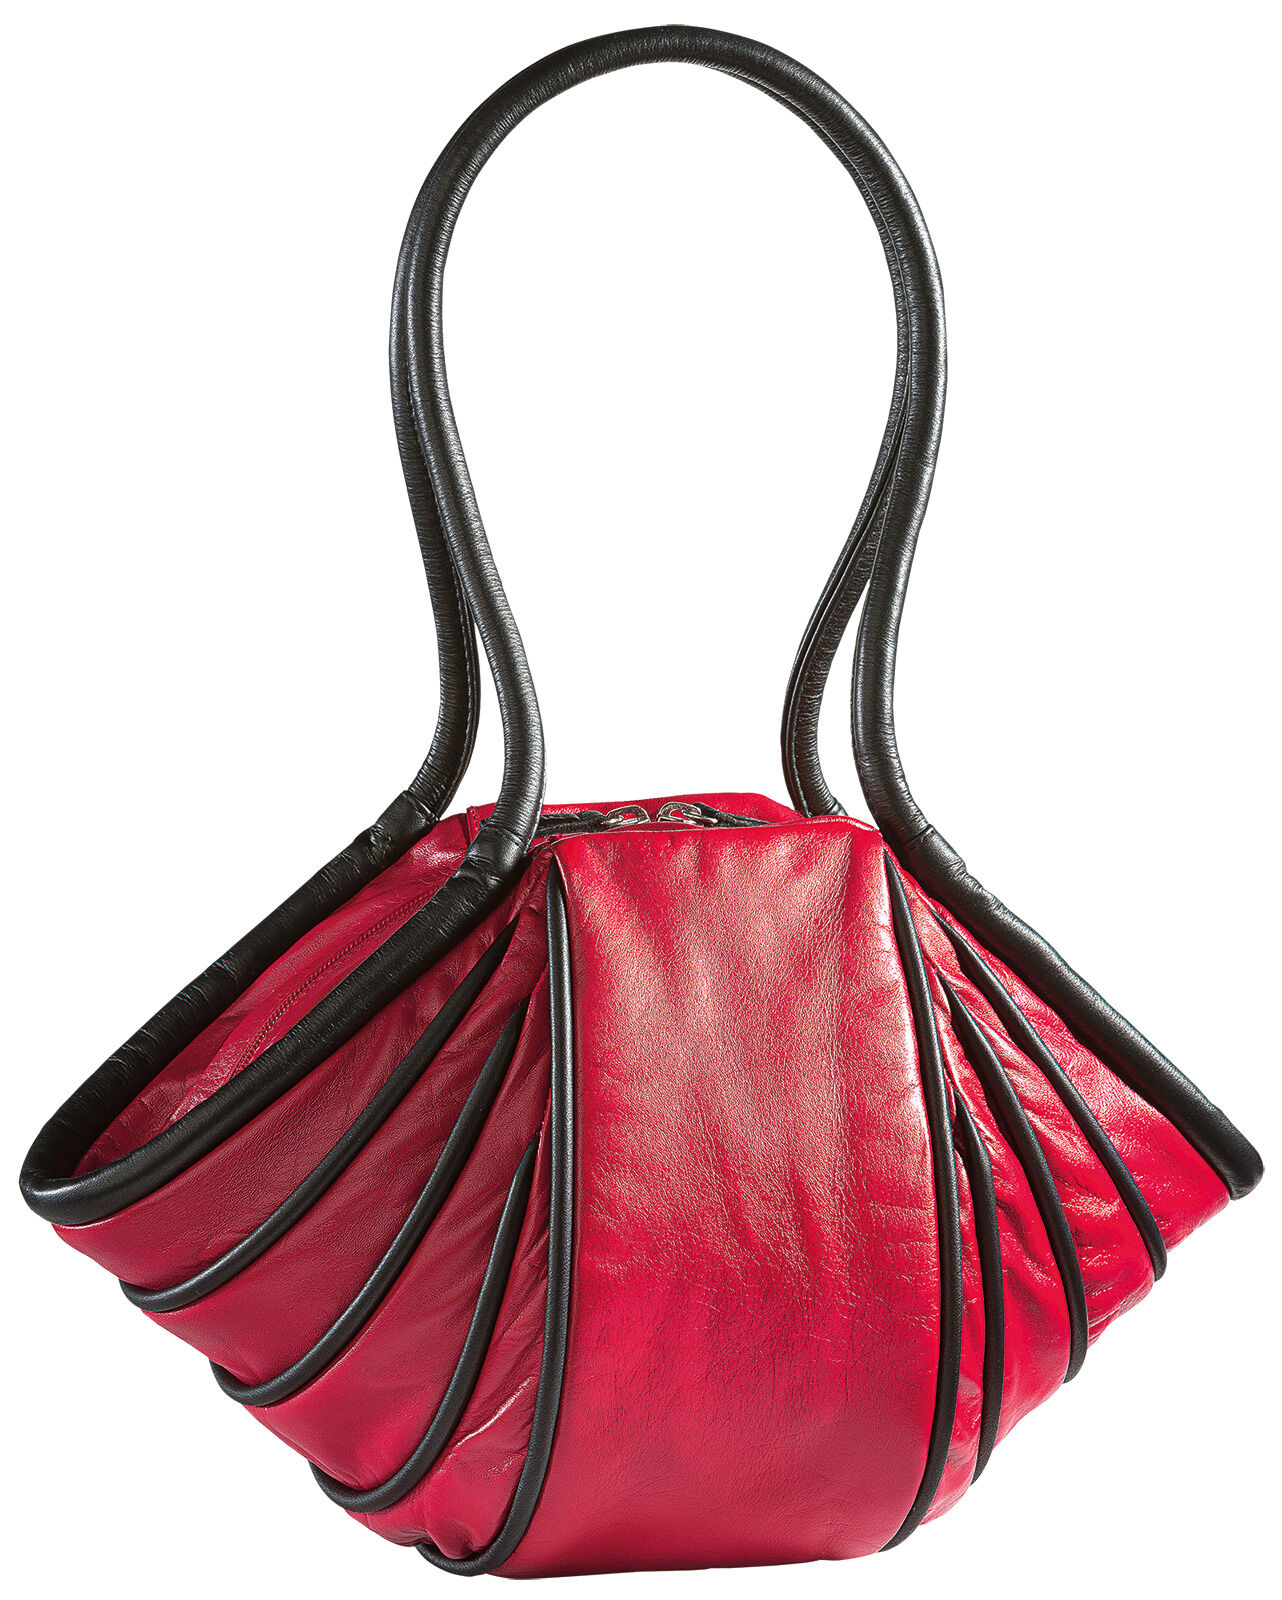 Handtas "Lady-Stripe", rood/zwarte versie